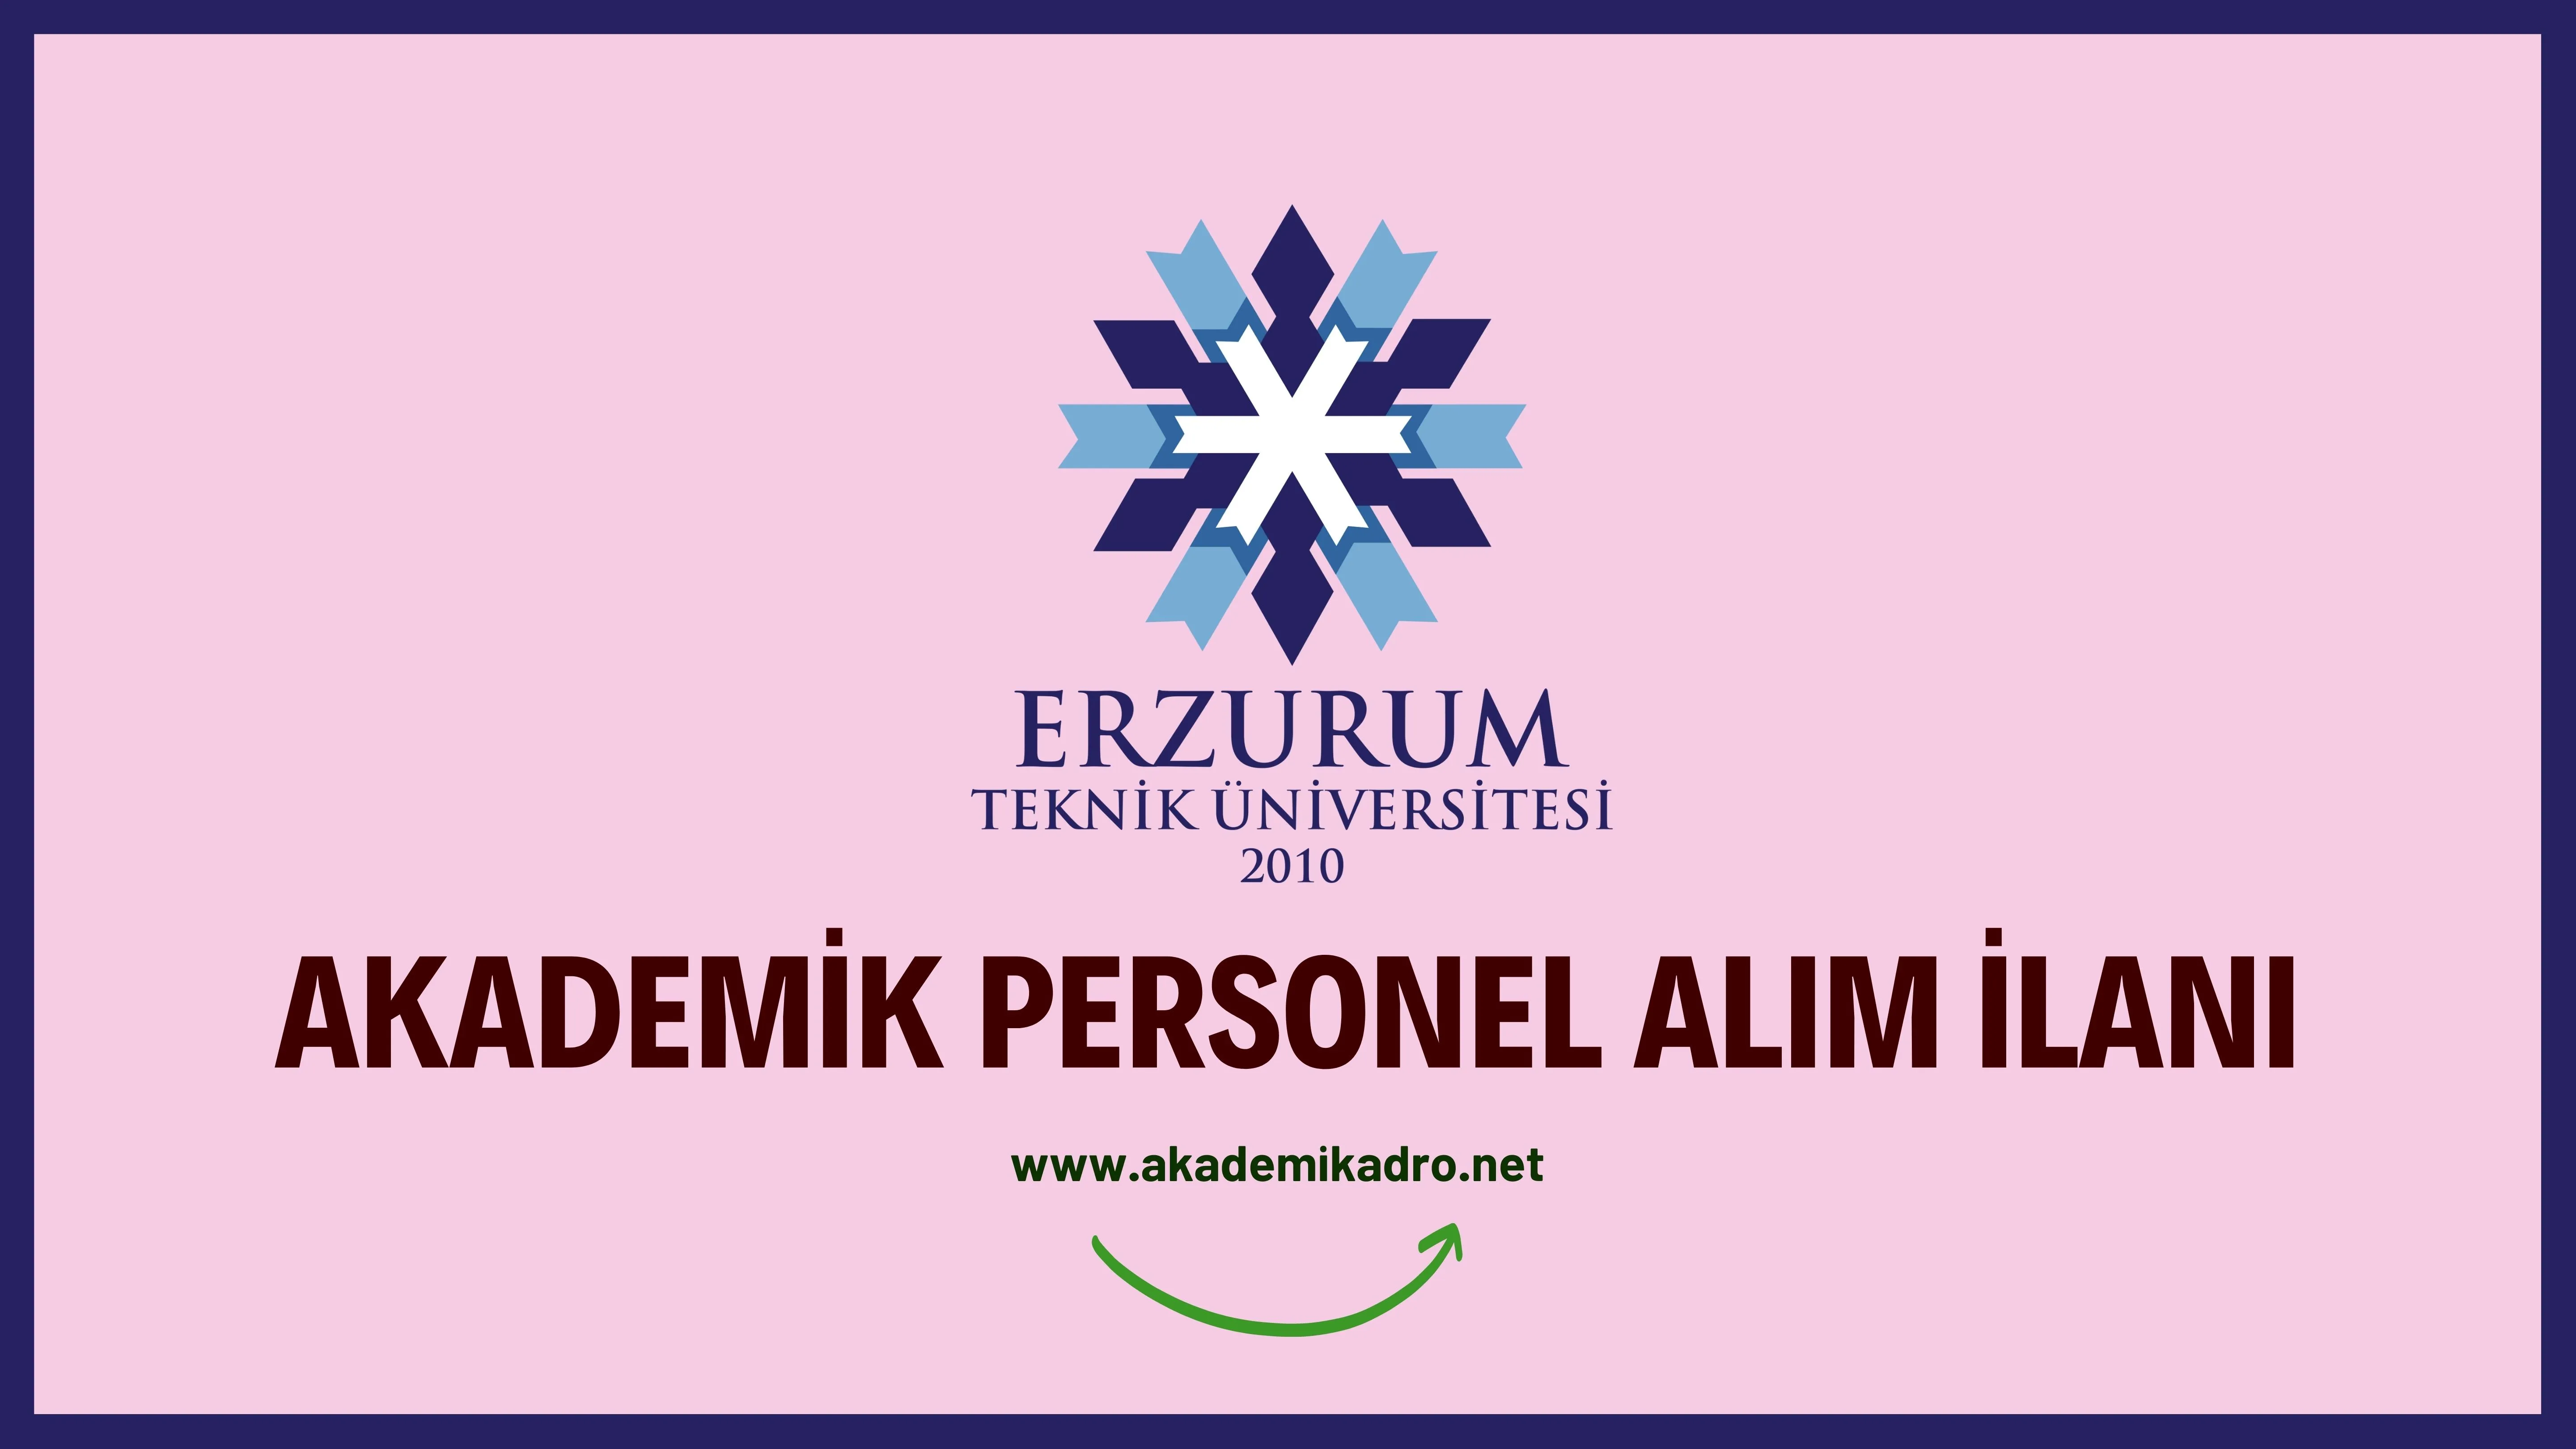 Erzurum Teknik Üniversitesi birçok alandan 16 Akademik personel alacak.